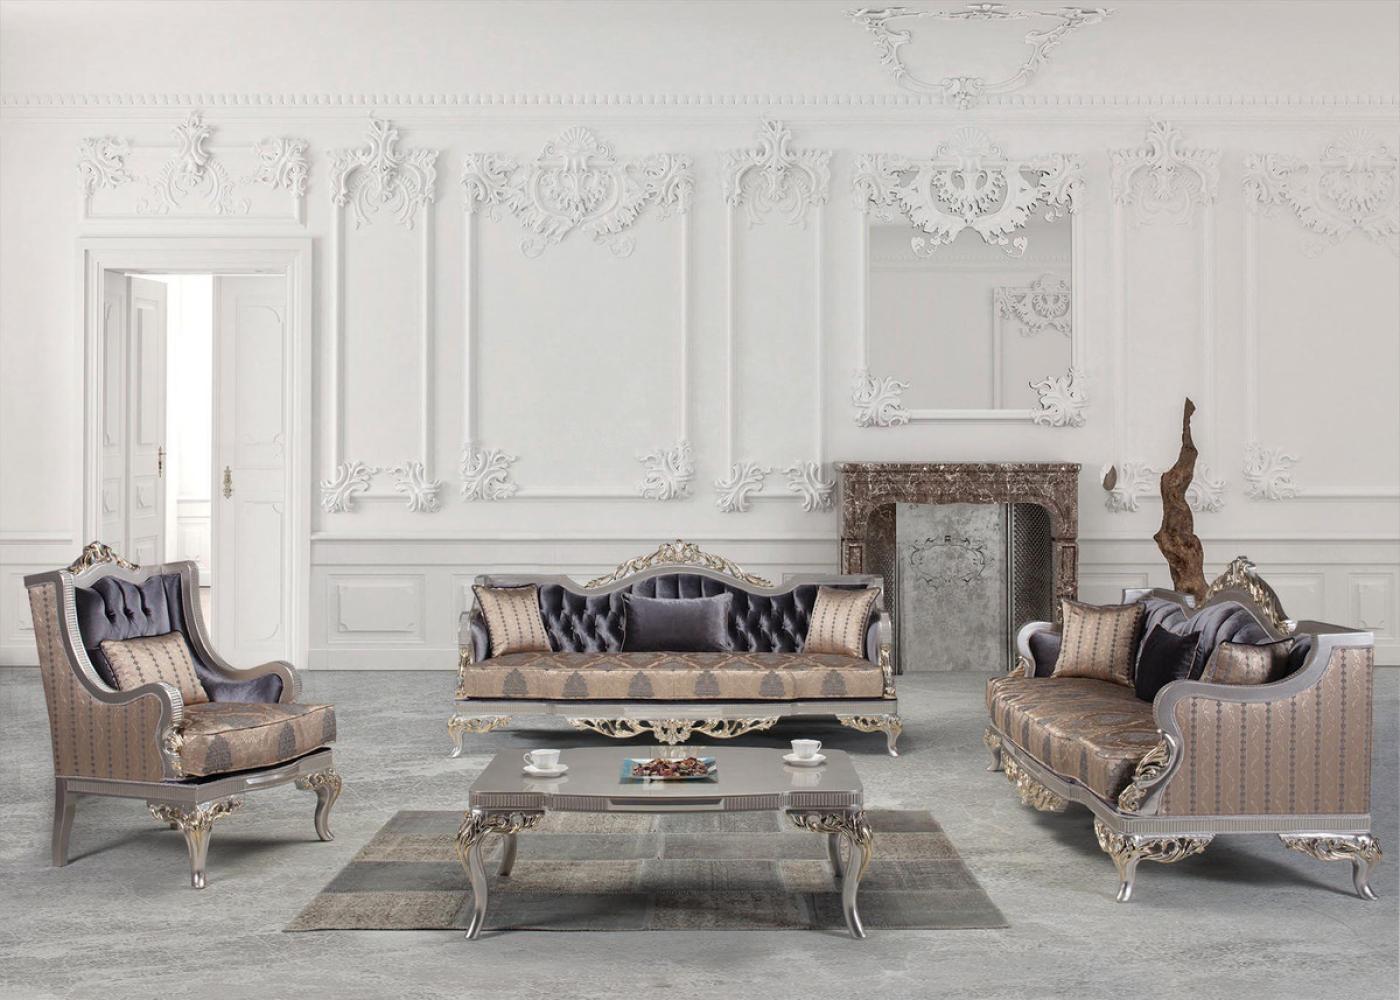 Casa Padrino Luxus Barock Wohnzimmer Set Lila / Beige / Silber / Gold - 2 Sofas & 2 Sessel & 1 Couchtisch - Wohnzimmer Möbel im Barockstil - Edel & Prunkvoll Bild 1